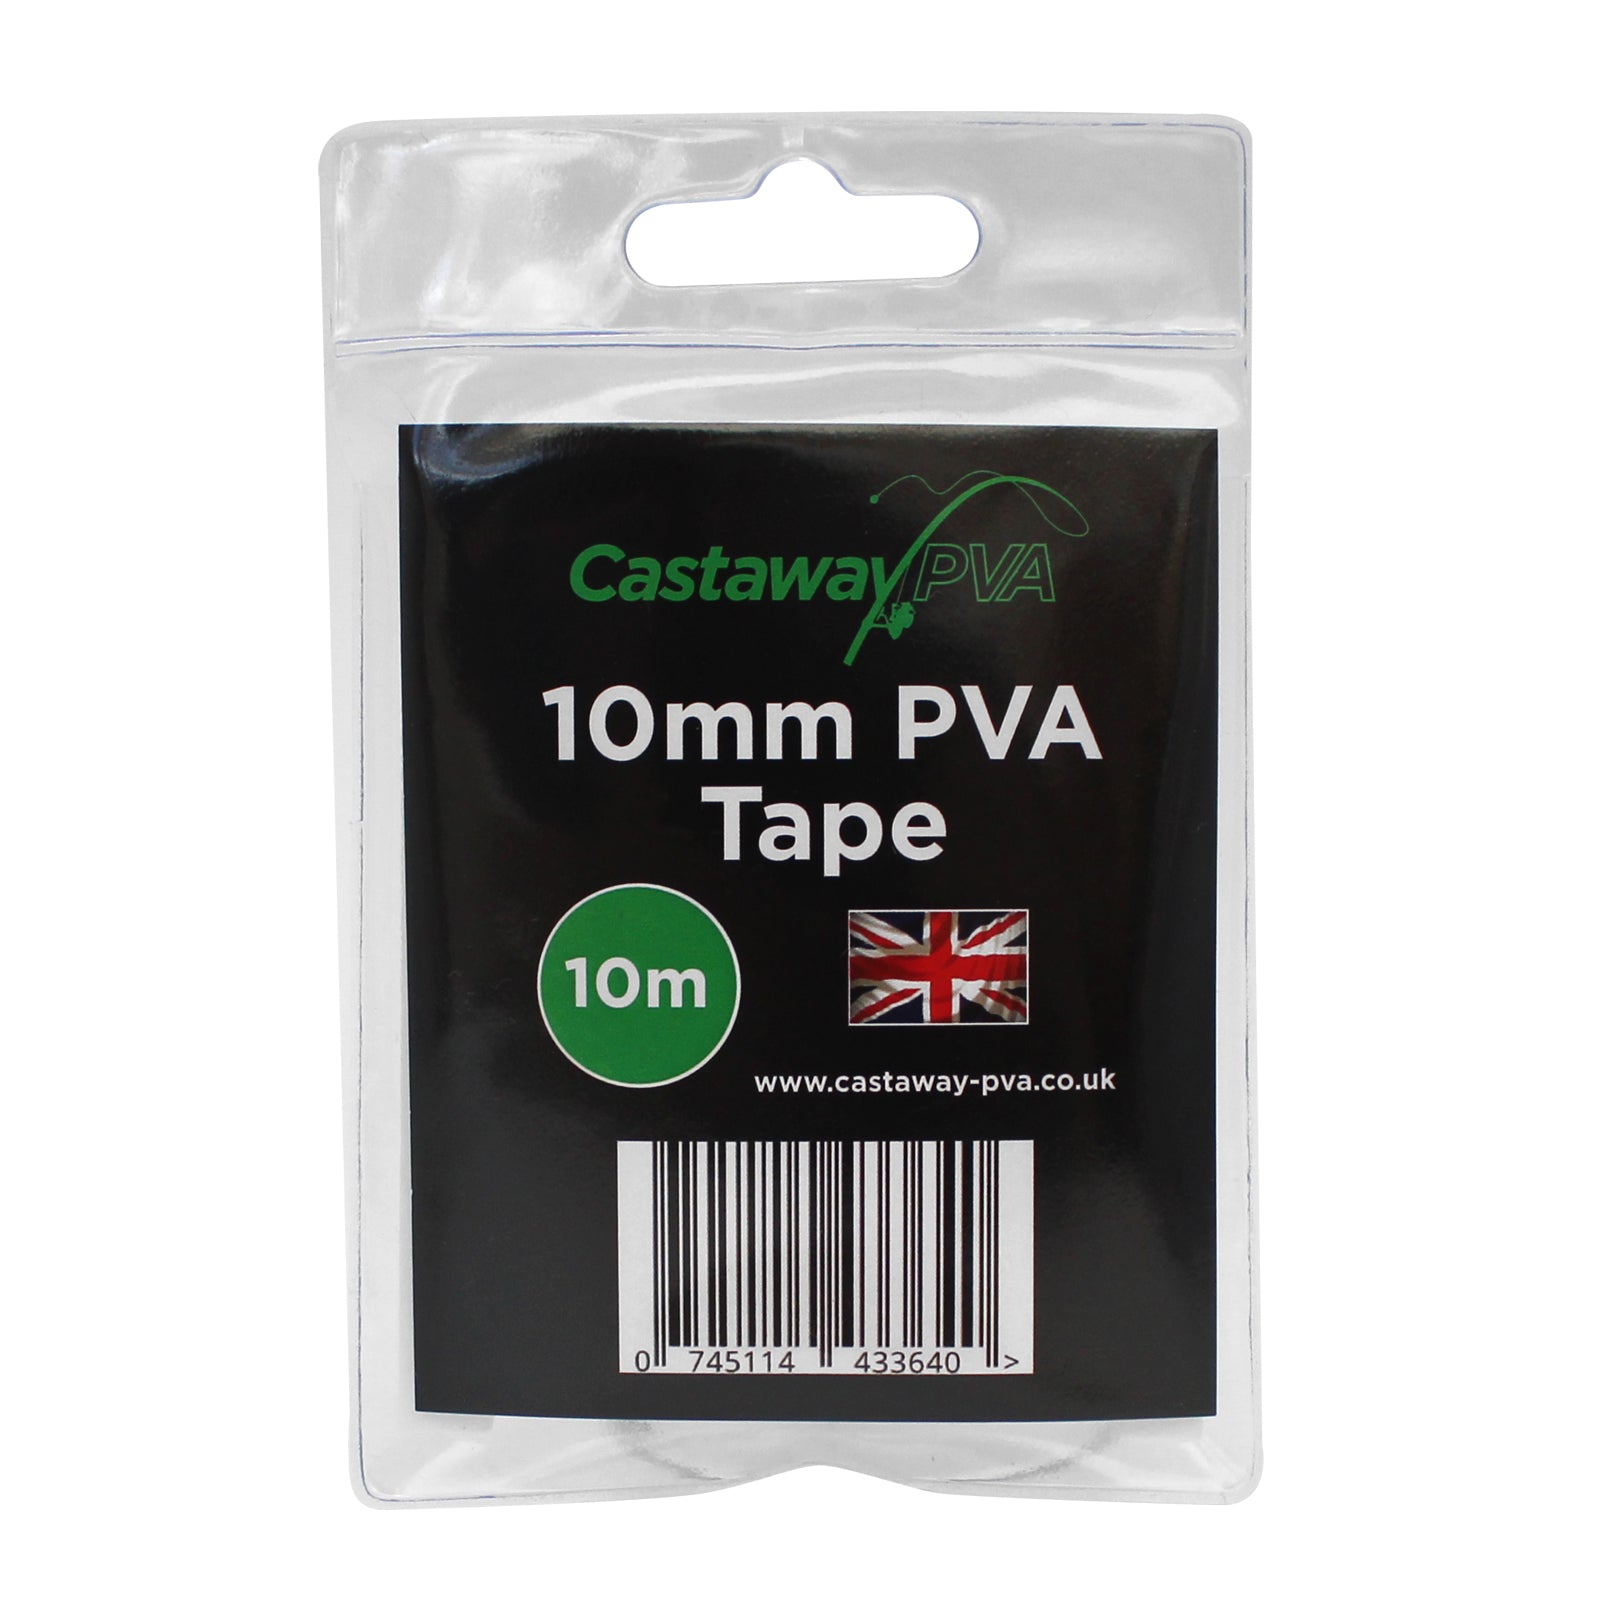 Castaway PVA 10mm PVA Tape 10m